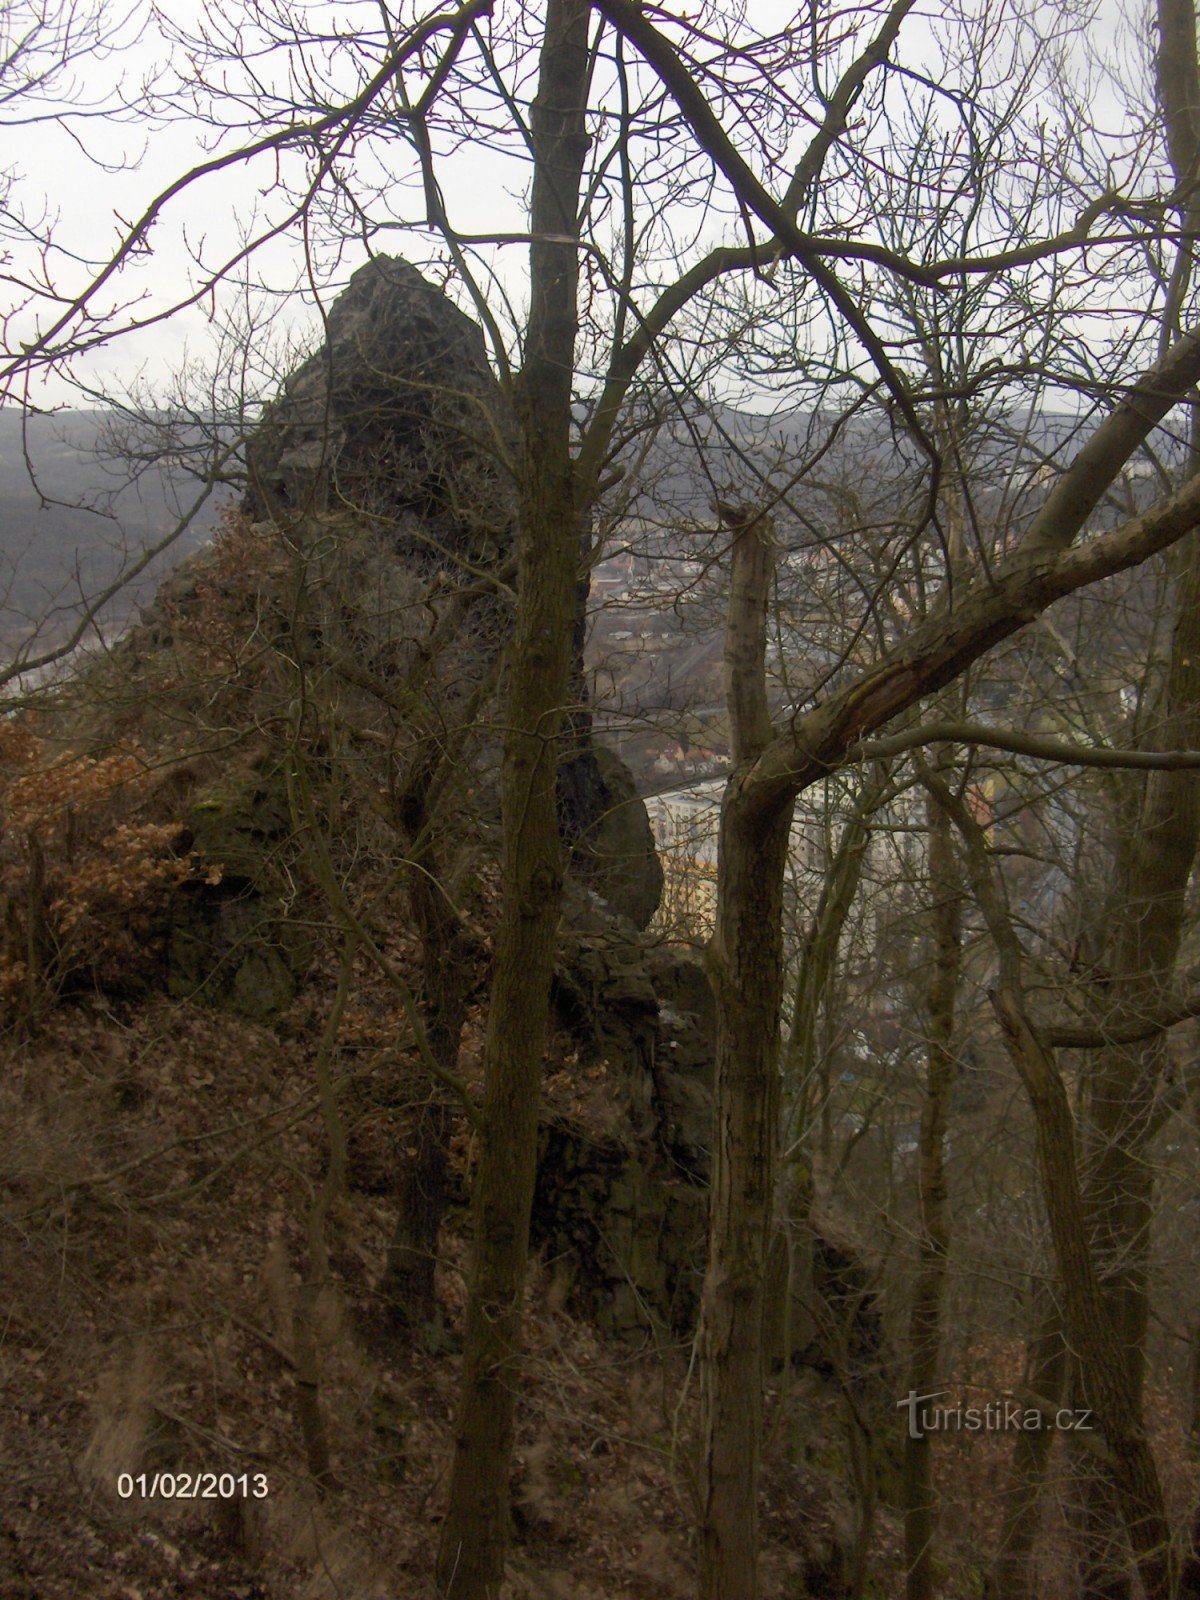 Ruinerna av slottet Strážný